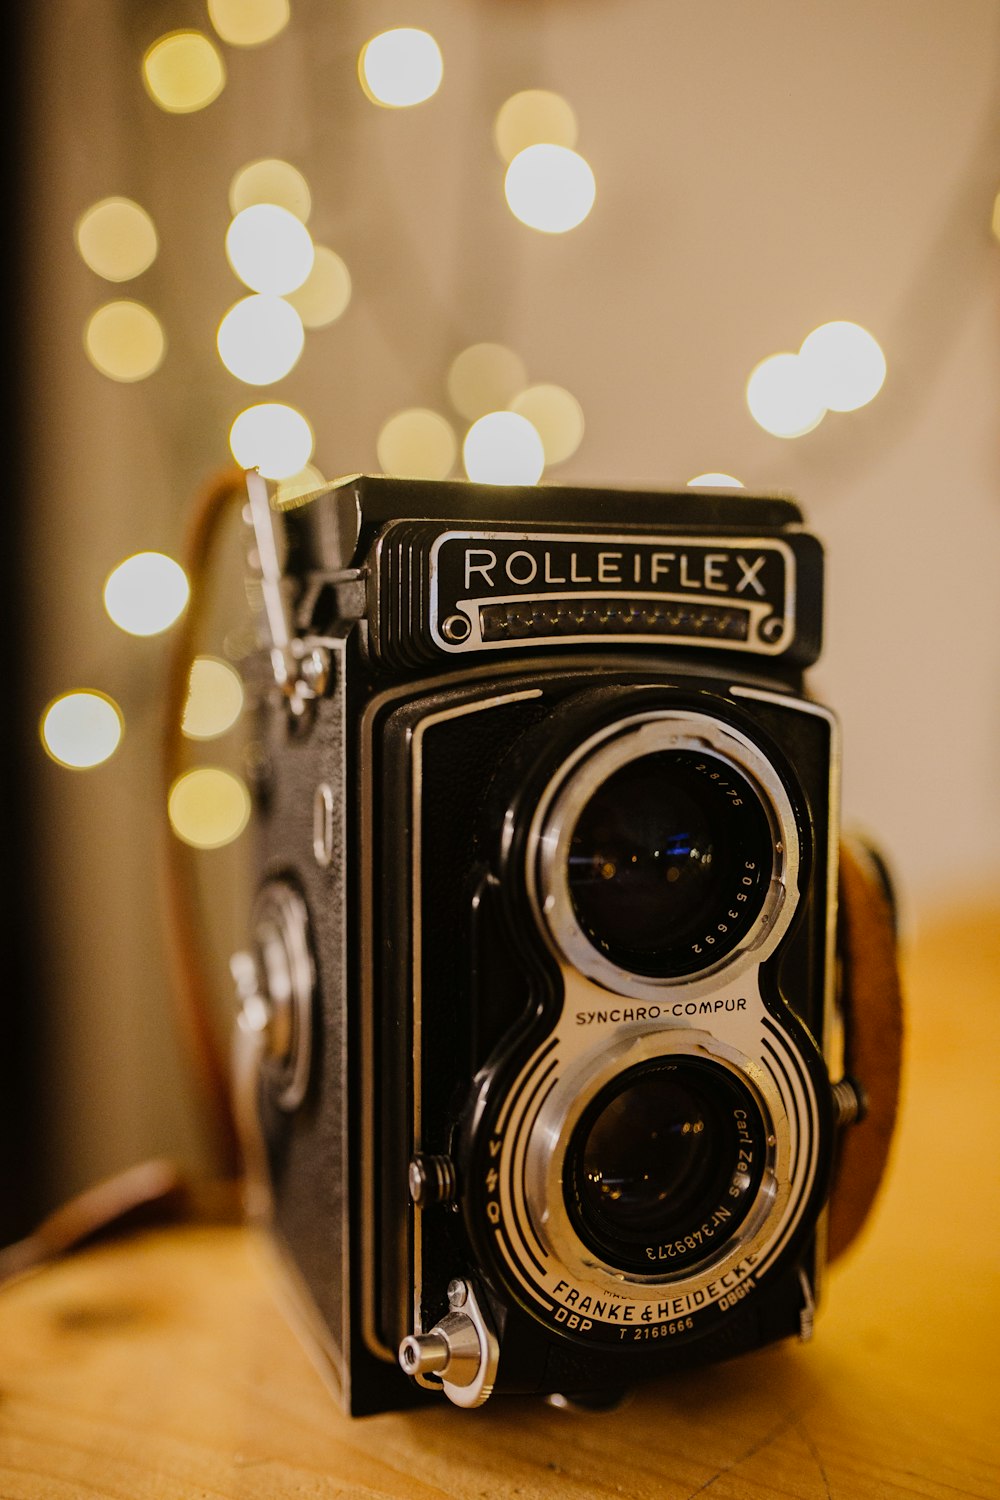 Flachfokusfoto der schwarzen Rolleiflex-Kamera